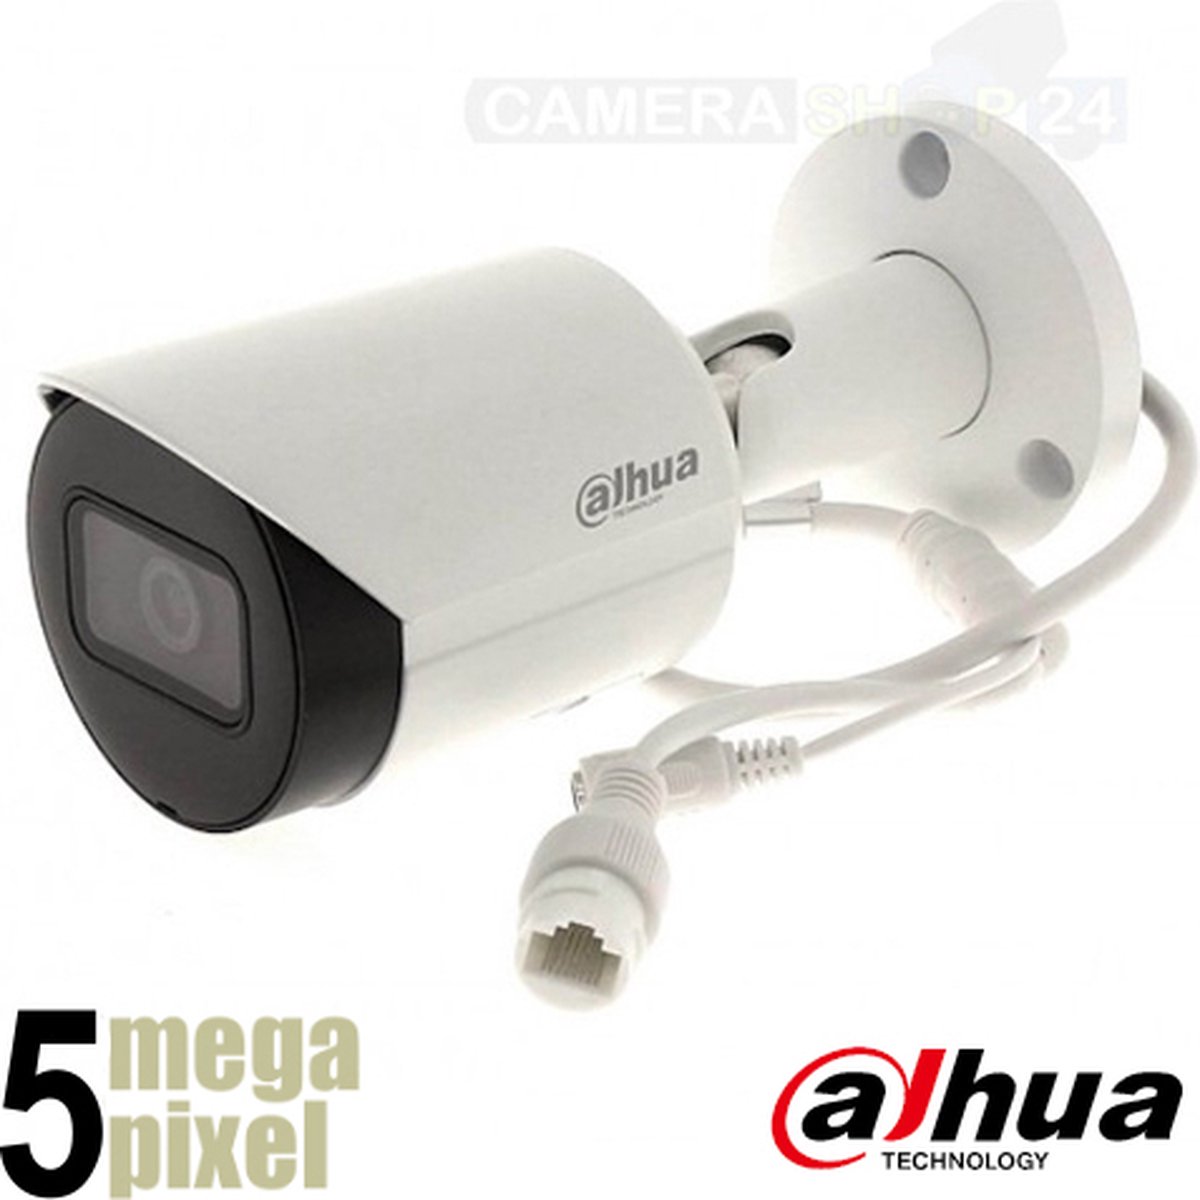 Dahua 5 megapixel IP bewakingscamera - 30m nachtzicht - starlight - SD-kaart slot